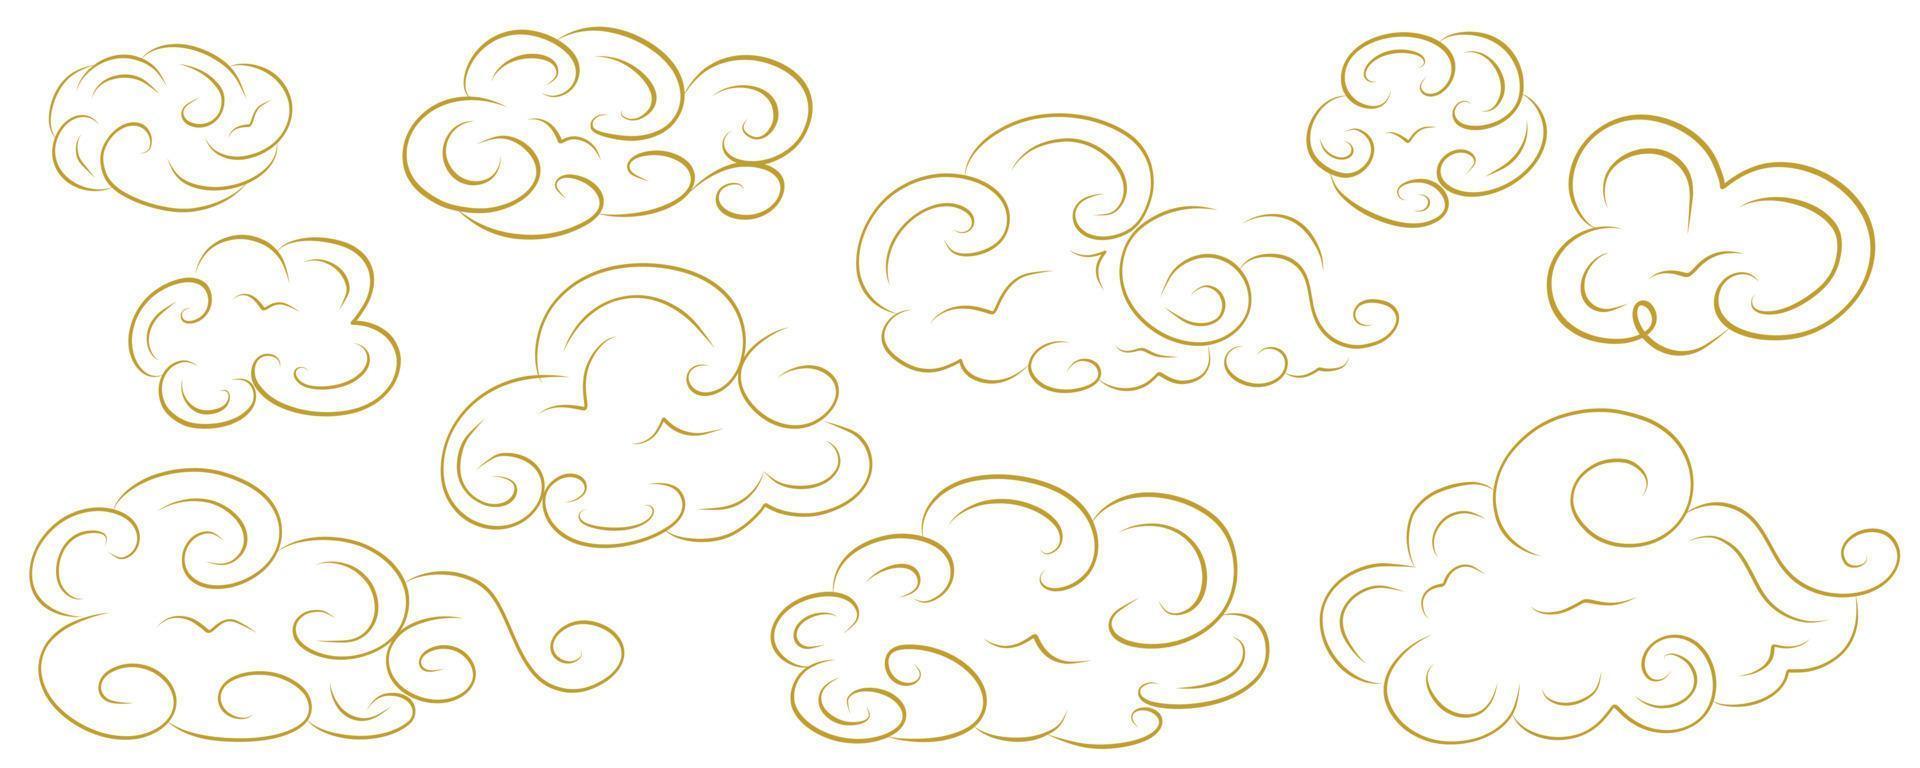 nuvole cinesi d'oro con riccioli in un set su uno sfondo bianco. disegno celeste orientale di diverse forme di nuvole in stile piatto. illustrazione vettoriale. vettore